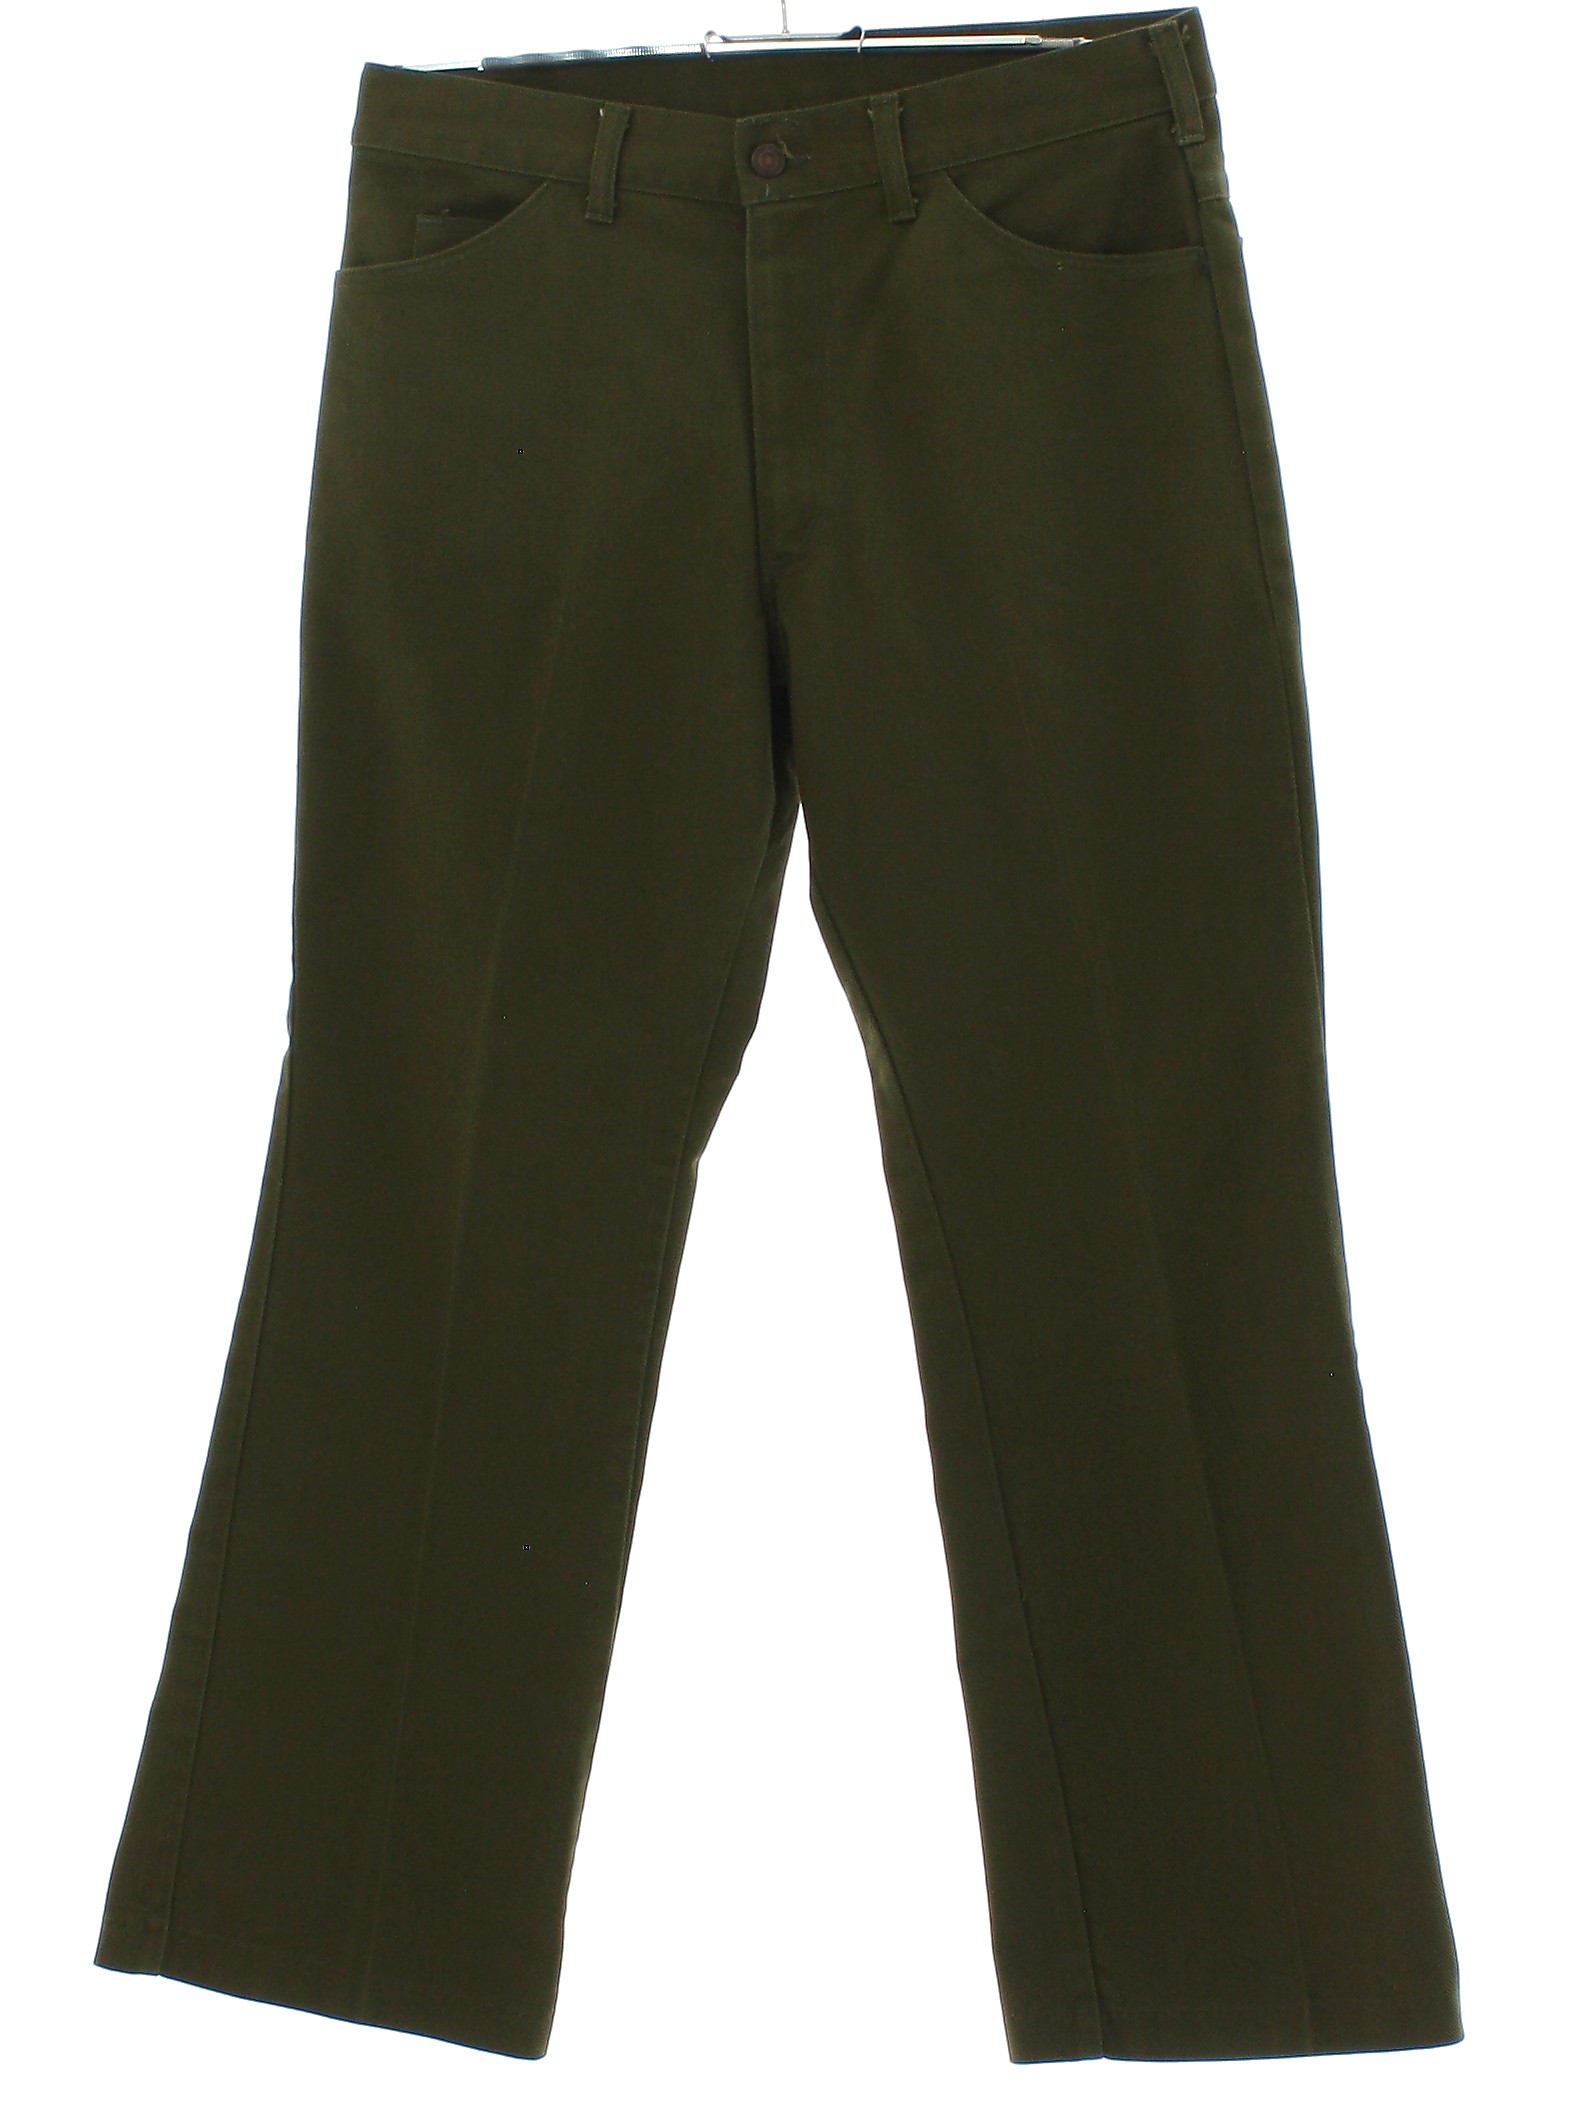 Vintage Roebucks 70's Pants: 70s -Roebucks- Mens army green solid ...